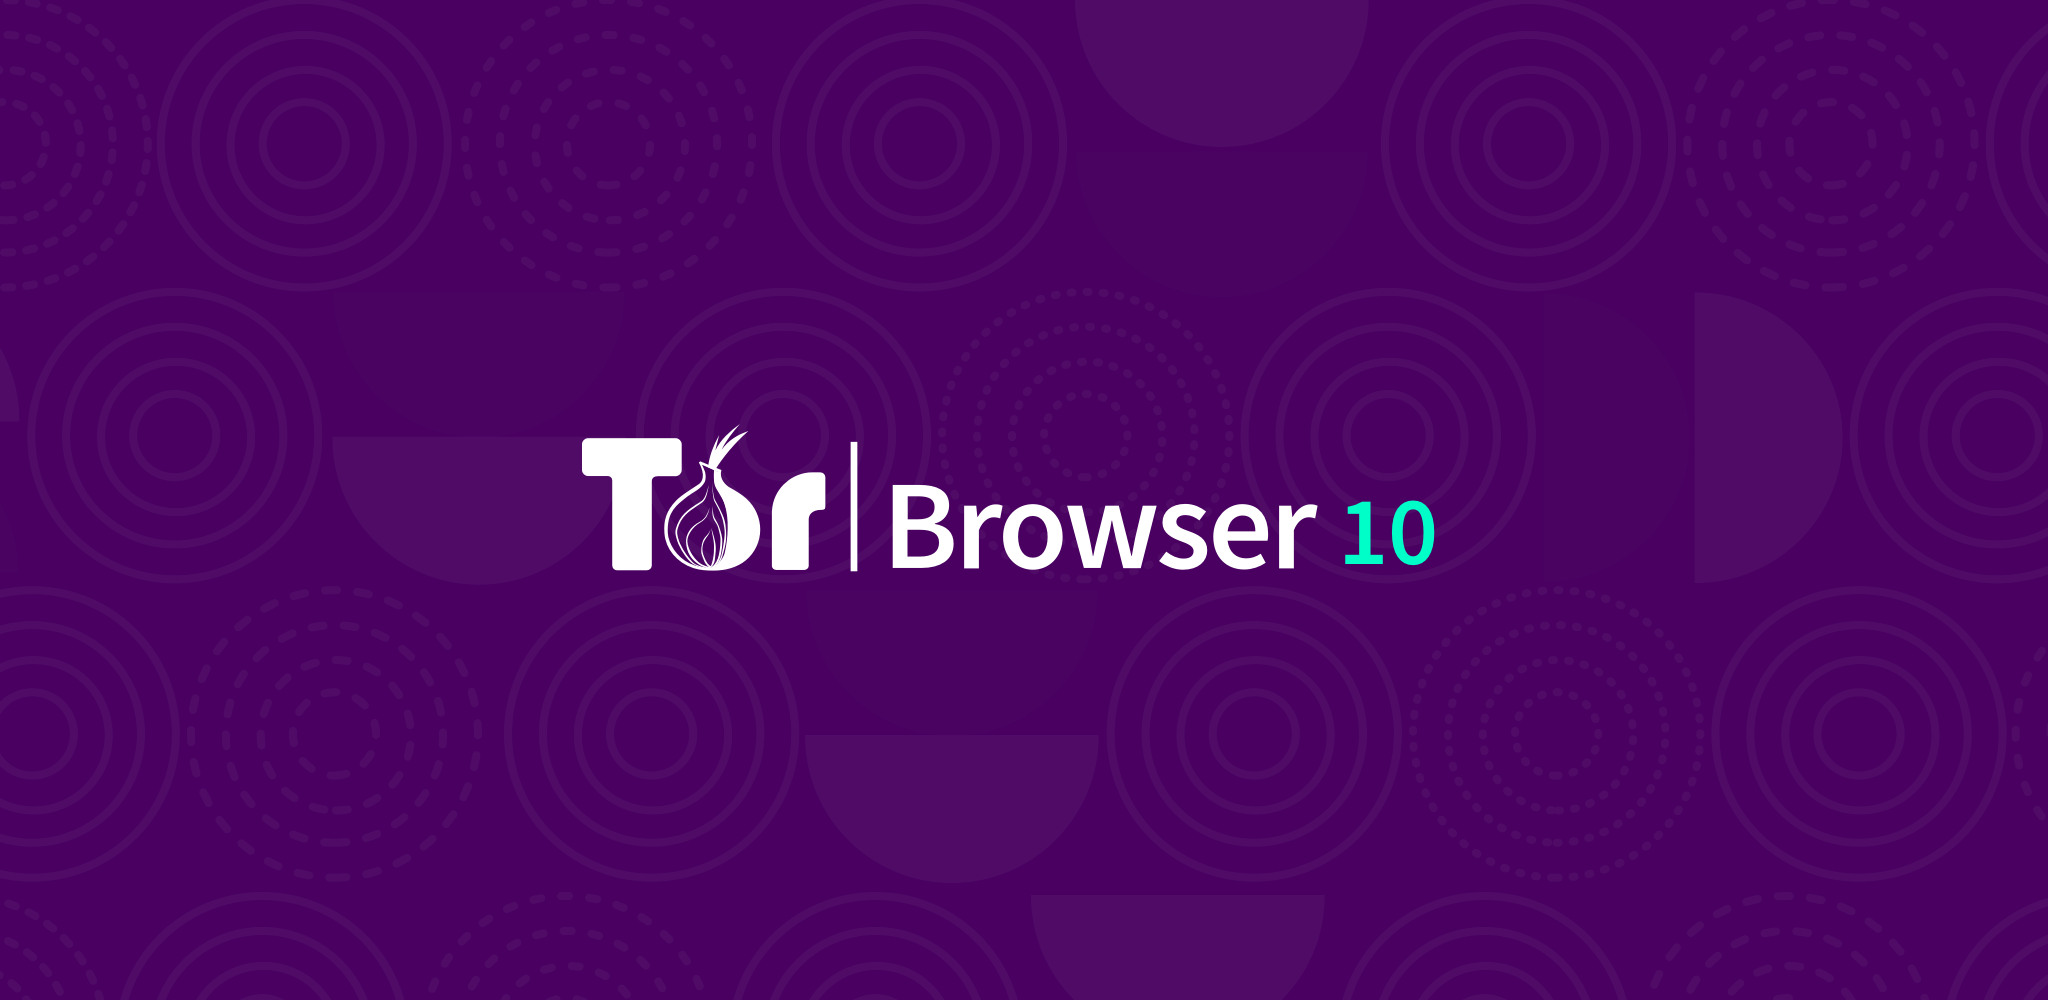 Tor browser mobile windows mega тор браузер не работает в вк mega